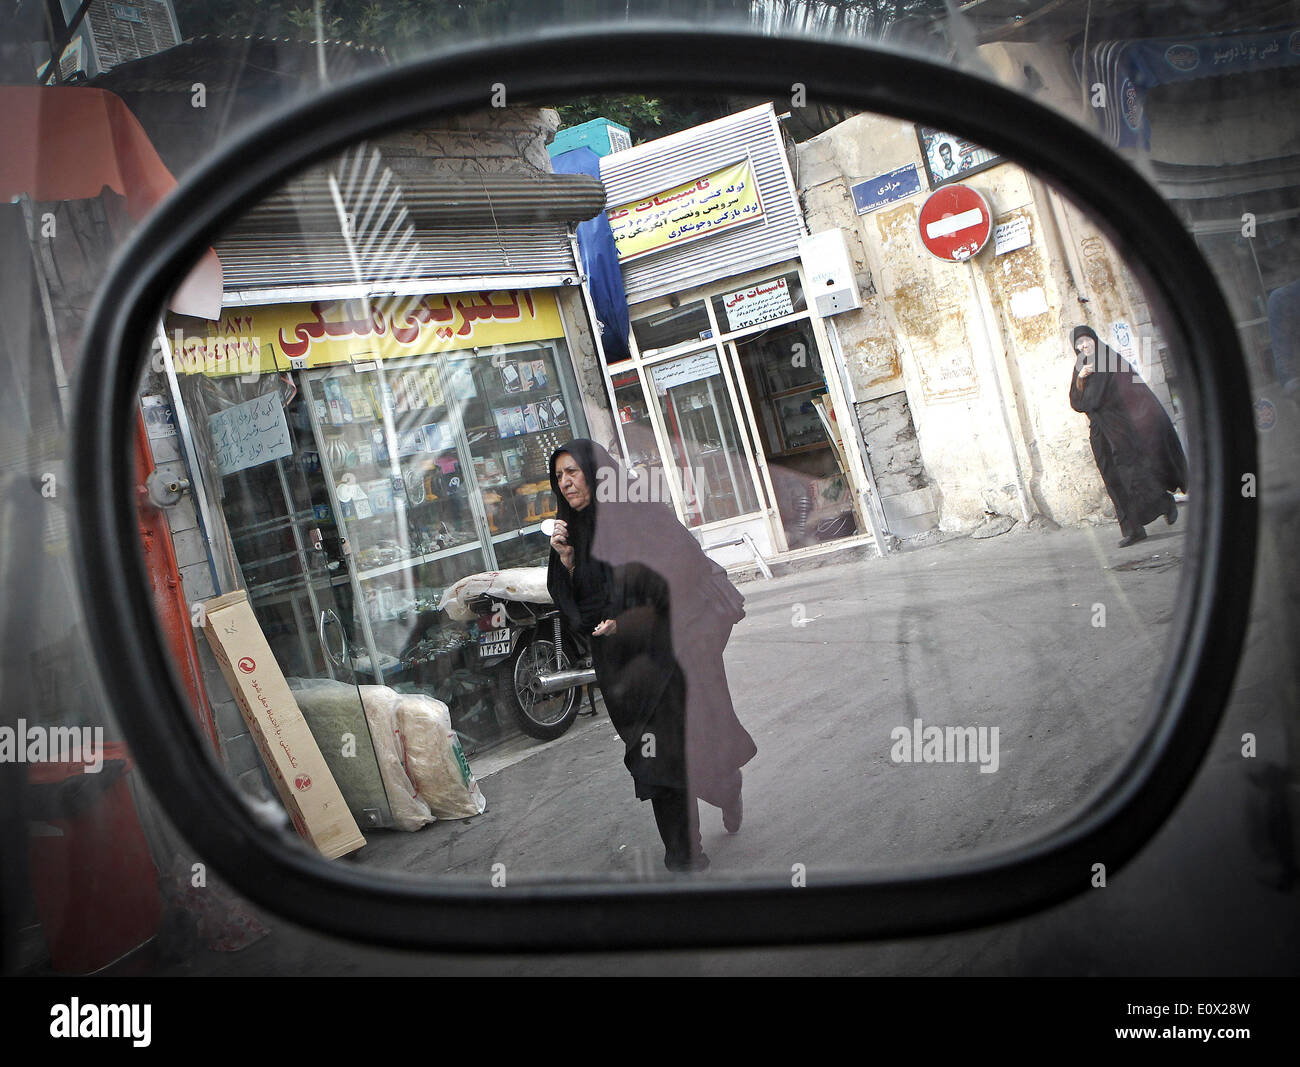 Téhéran, Iran. 19 mai, 2014. Les femmes portant le tchador à pied sur une ruelle à Téhéran, capitale de l'Iran, le 19 mai 2014. Tchador est un genre de Hijab officiel pour de nombreuses femmes en Iran dans les lieux publics. Le Hijab, une couverture des cheveux et le corps pour les femmes, a été tenu en public après la révolution islamique en Iran en 1979. © Ahmad Halabisaz/Xinhua/Alamy Live News Banque D'Images